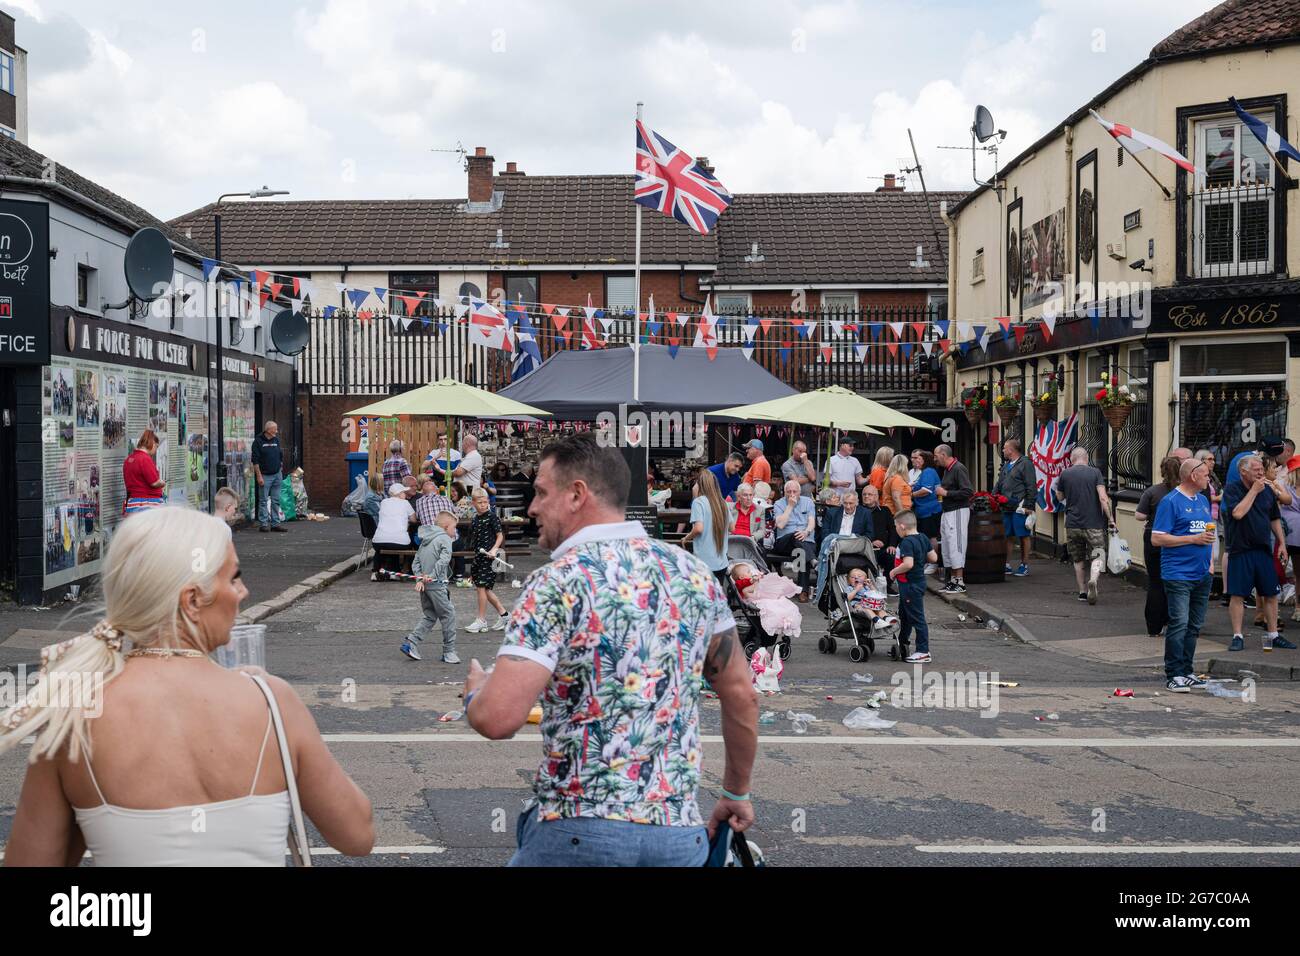 Gli spettatori si riuniscono al REX Bar, una famigerata UVF (Ulster Volonteer Force) sulla Shankill Road per il 12 luglio Orange Order march. Il 12 luglio annuale delle parate dell'Ordine arancione si è svolto quest'anno dopo un periodo di pausa dovuto alla pandemia. Nonostante le speculazioni di un fine settimana potenzialmente riscaldato a causa dei protocolli Brexit e delle recenti tensioni correlate, nonché alcune contese il falò si accumula in tutto il Nord, le festività sono passate pacificamente. La stagione della parata segna l'anniversario della vittoria del re protestante Guglielmo d'Orange sulle forze cattoliche del re Giacomo nella Battaglia del ragazzo Foto Stock